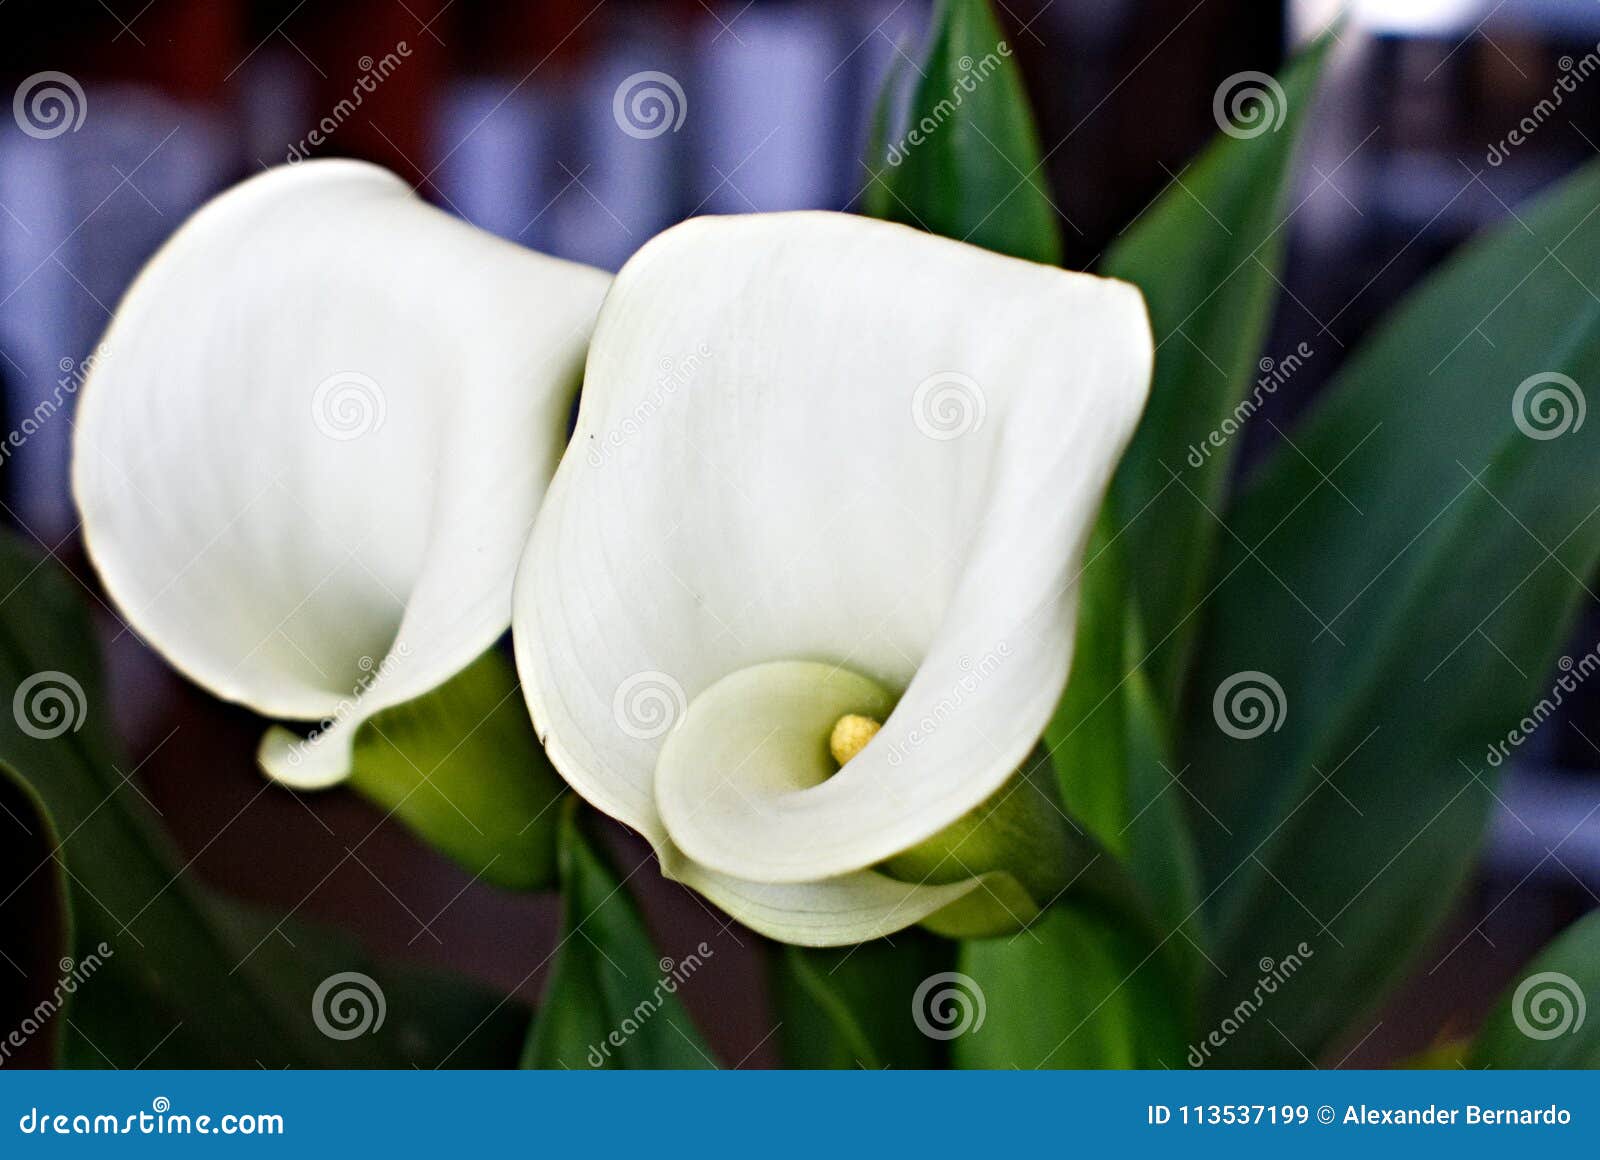 Floración de las calas imagen de archivo. Imagen de forma - 113537199